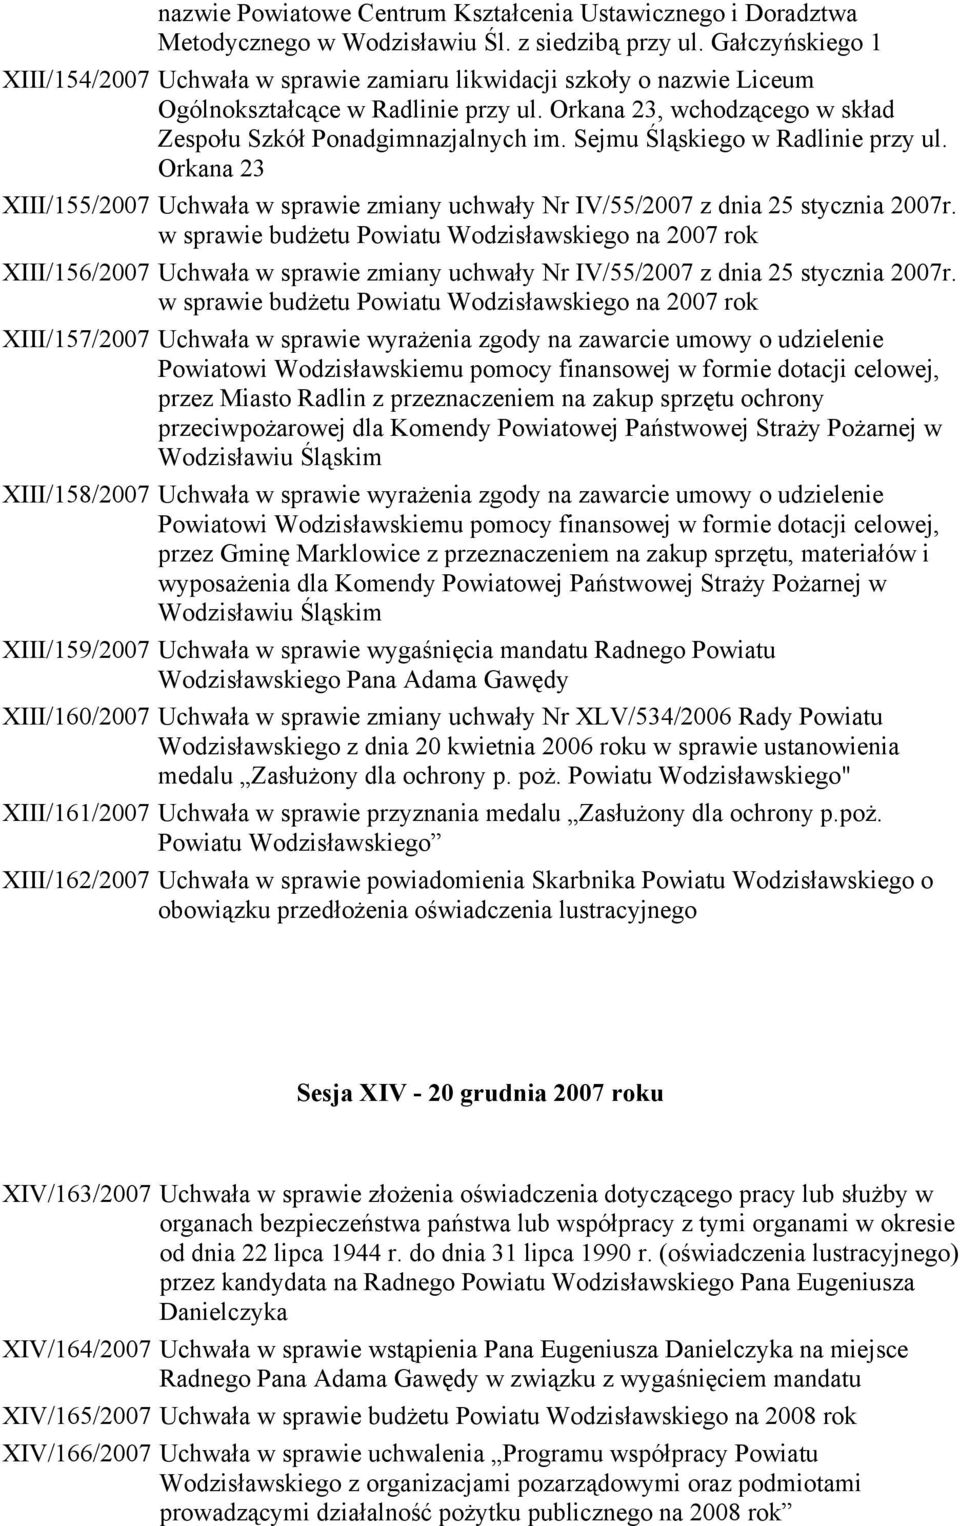 Sejmu Śląskiego w Radlinie przy ul. Orkana 23 XIII/155/2007 Uchwała w sprawie zmiany uchwały Nr IV/55/2007 z dnia 25 stycznia 2007r.